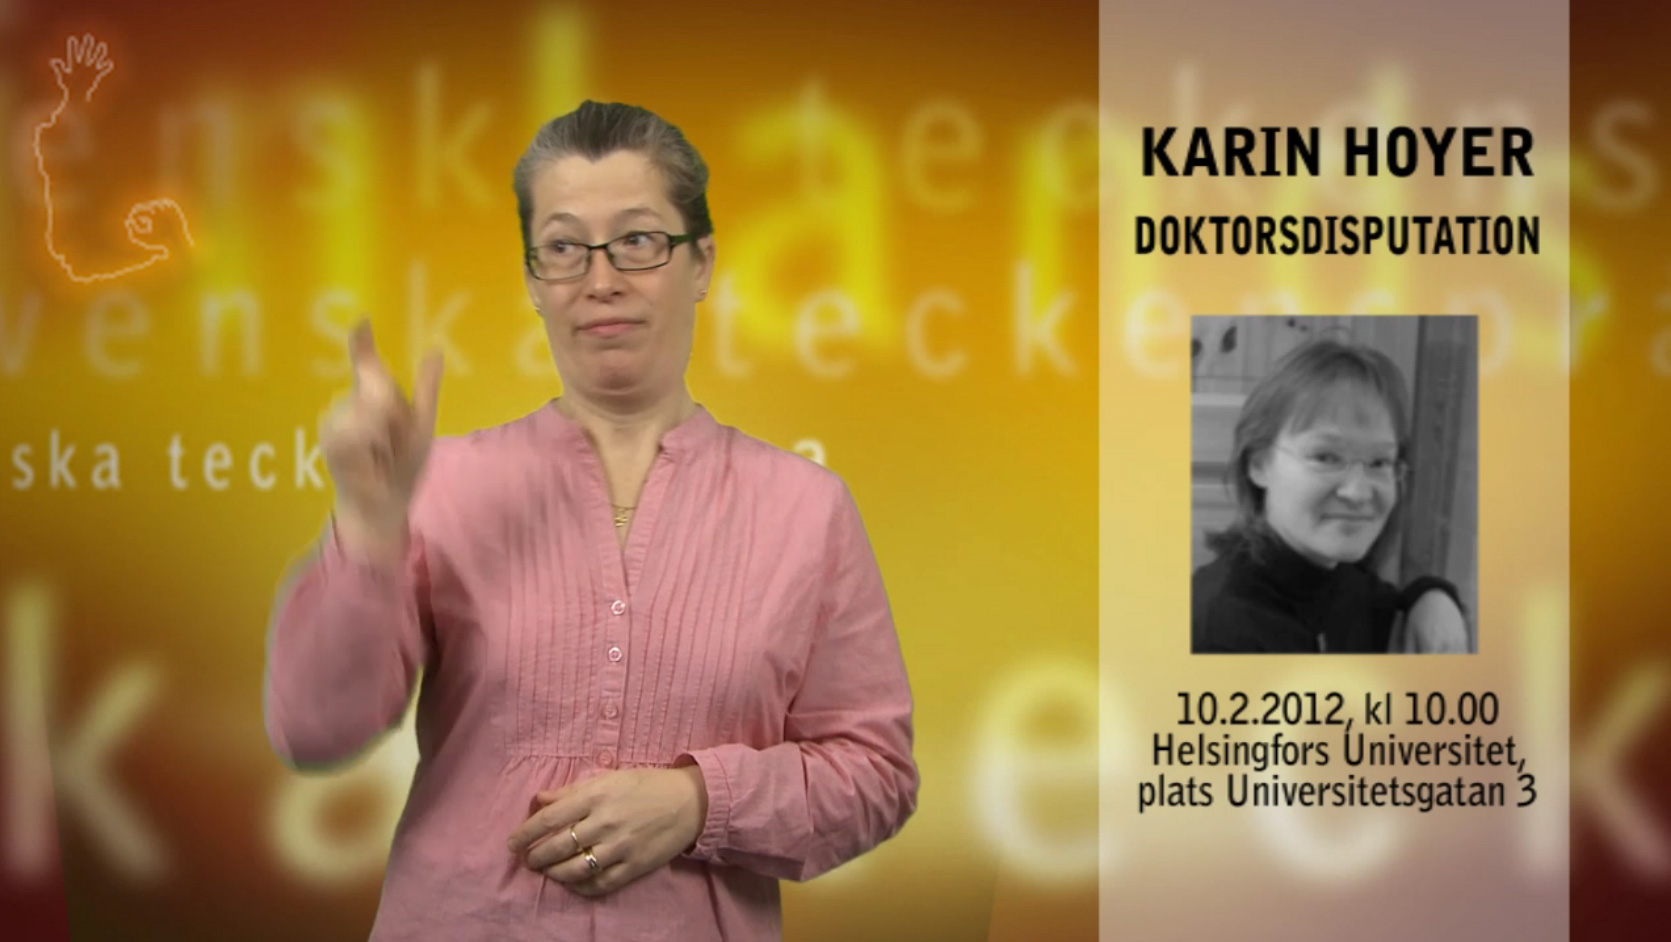 Karin Hoyer, Doktorsdisputation